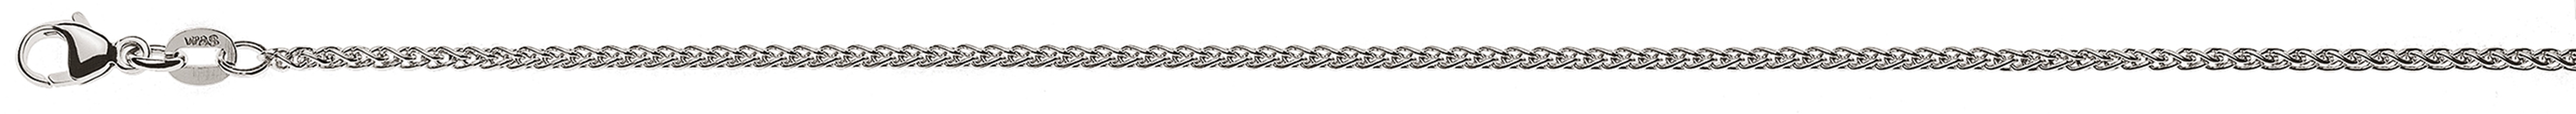 AURONOS Élégance Necklace white gold 14K cable chain 50cm 1.65mm